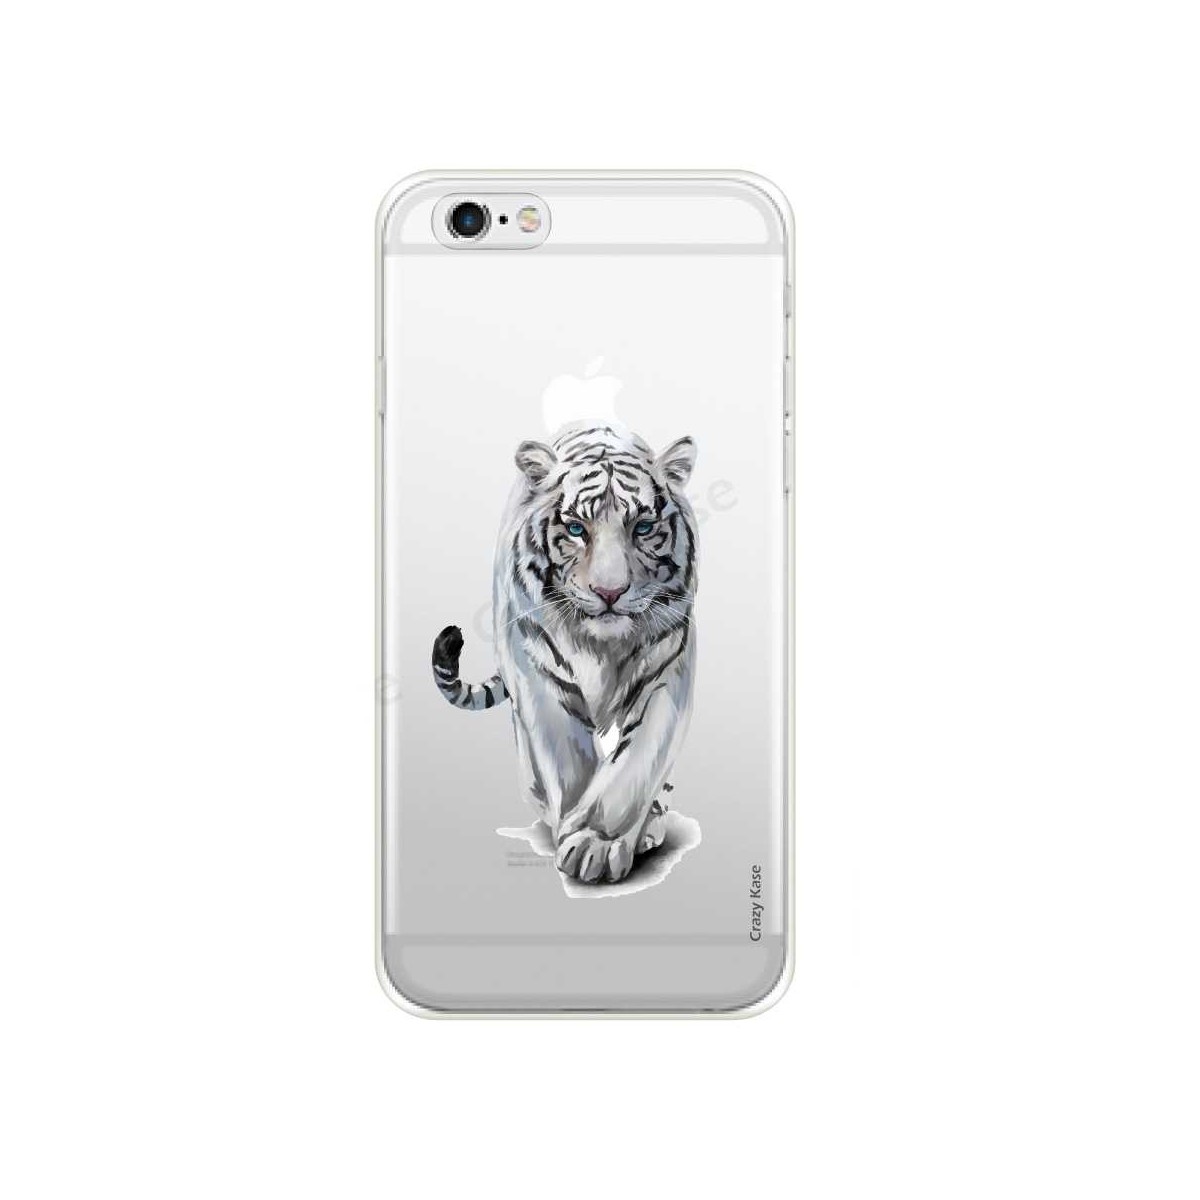 Coque iPhone 6 / 6s Plus souple Tigre blanc - Crazy Kase